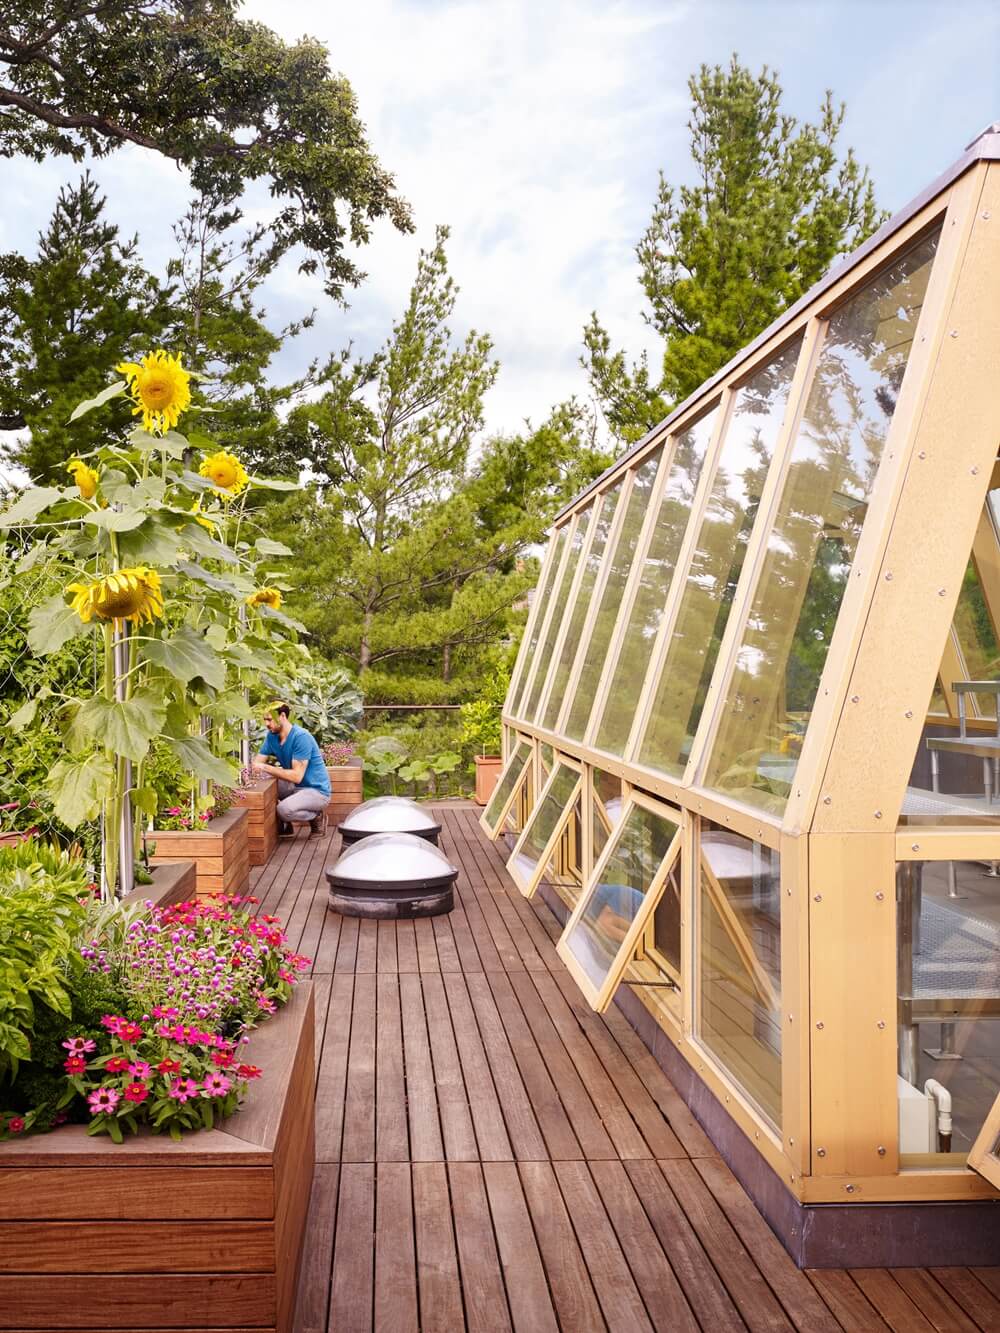 roof terrace ideas